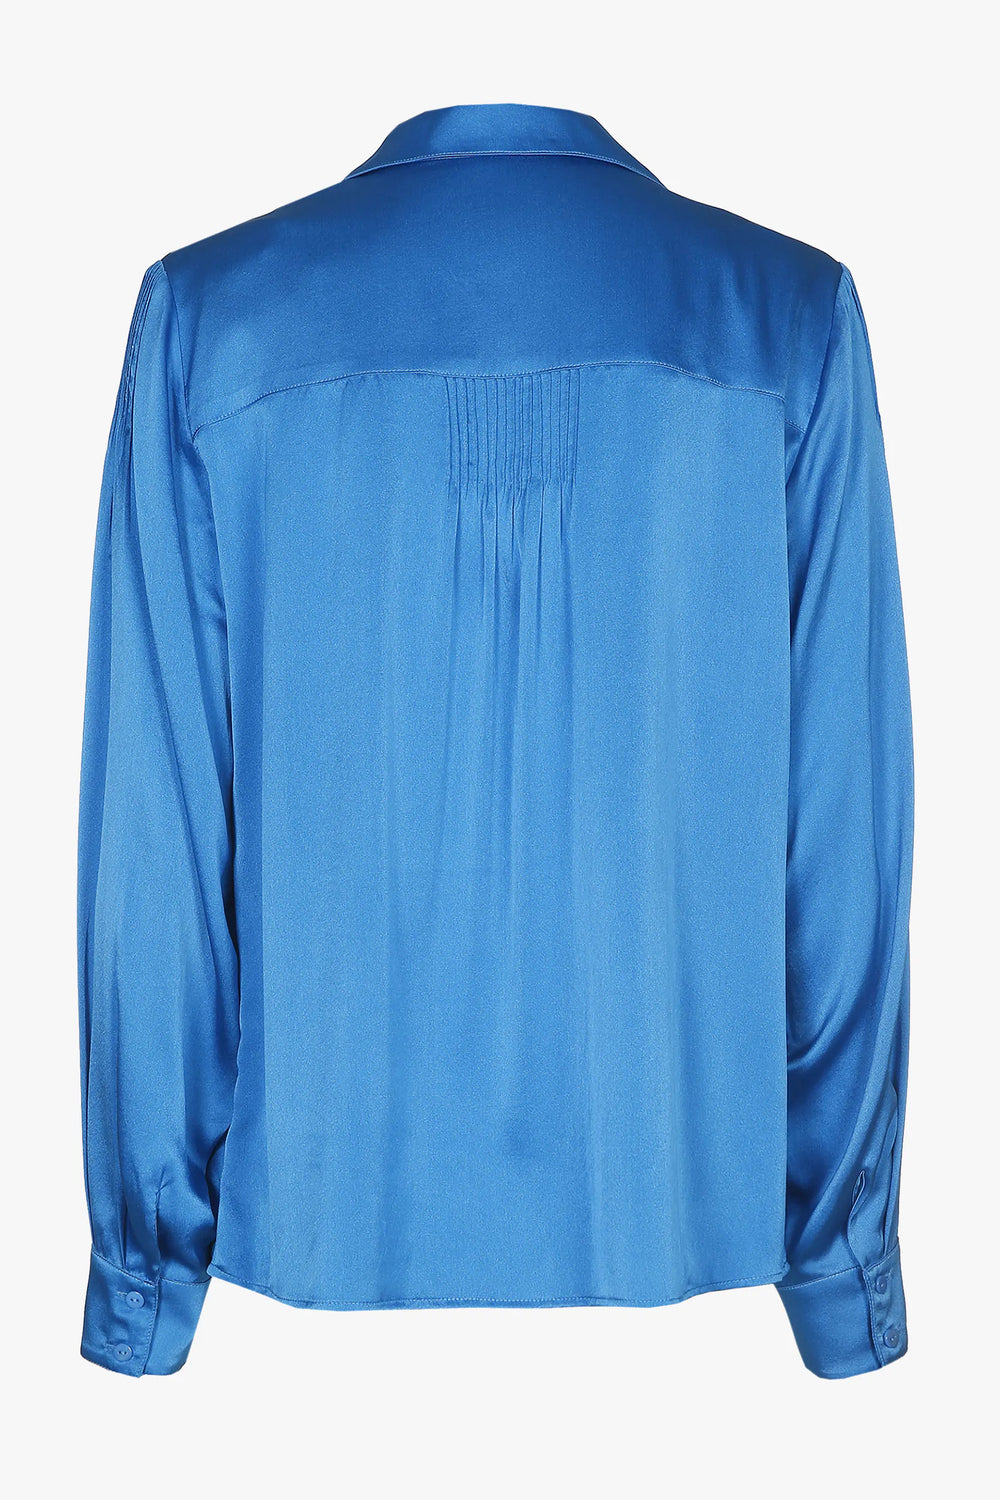 zijde blouse in miami blue - xandres - - grote maten - dameskleding - kledingwinkel - herent - leuven